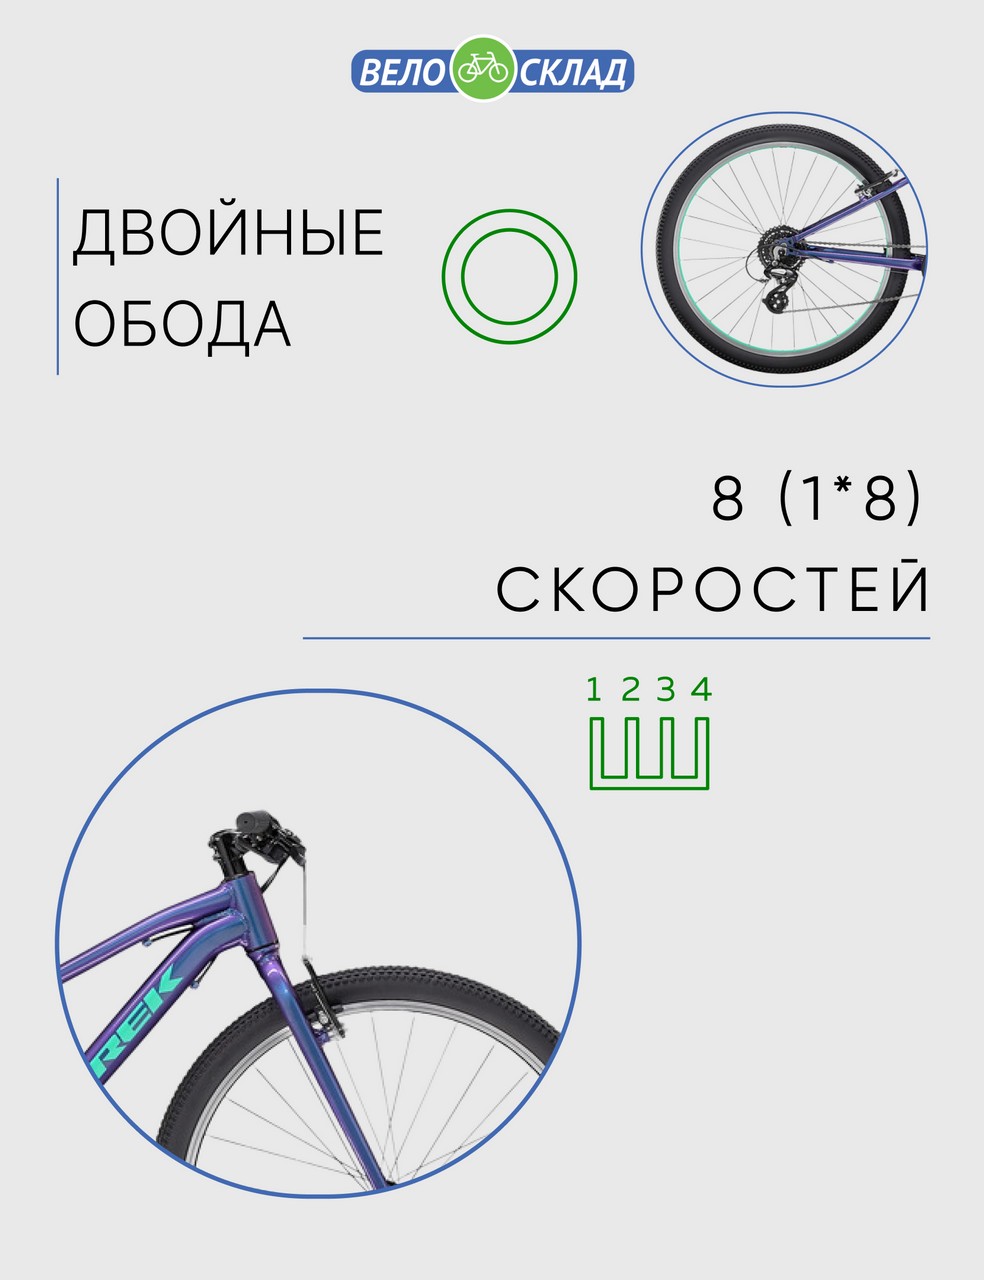 Подростковый велосипед Trek Wahoo 26, год 2022, цвет Фиолетовый, ростовка 14